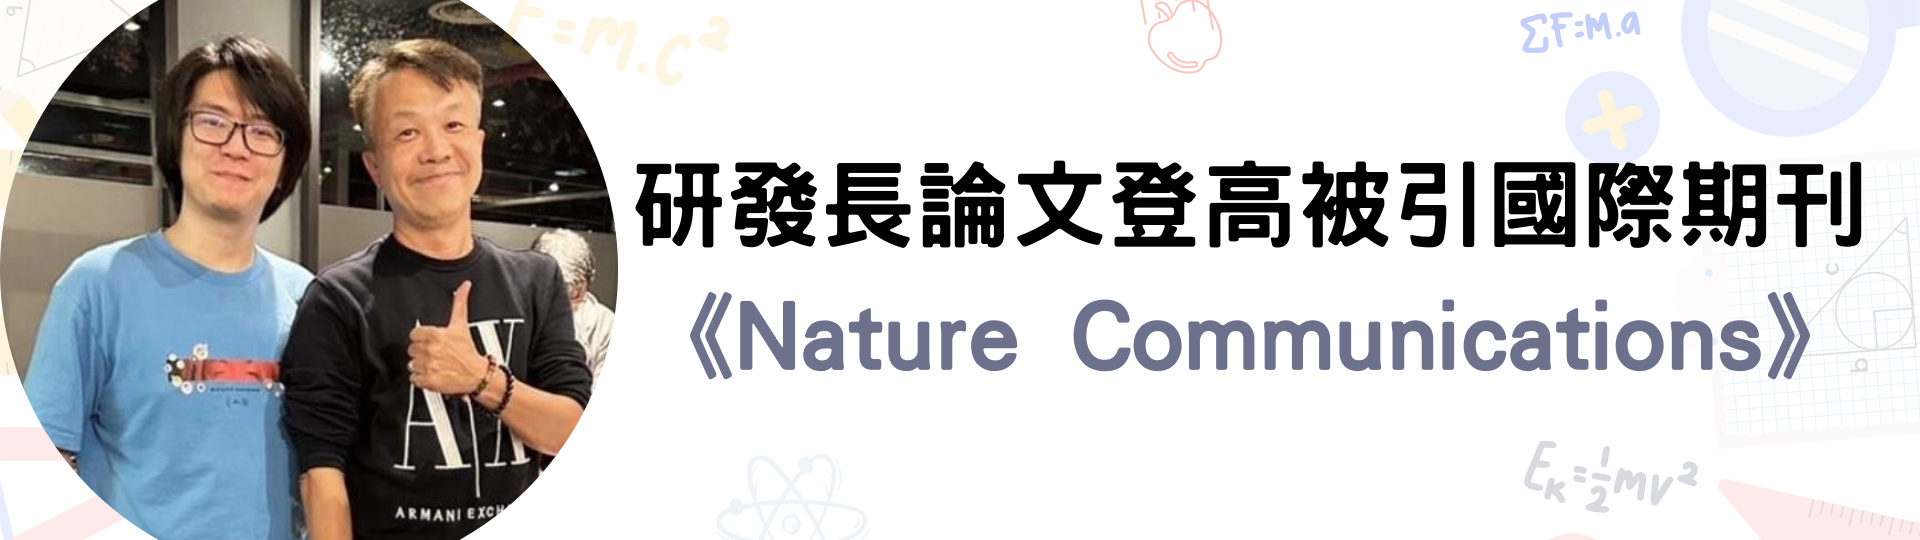 薛宏中 許誌恩 林奕安與頂大合作 論文登高被引國際期刊《Nature Communications》